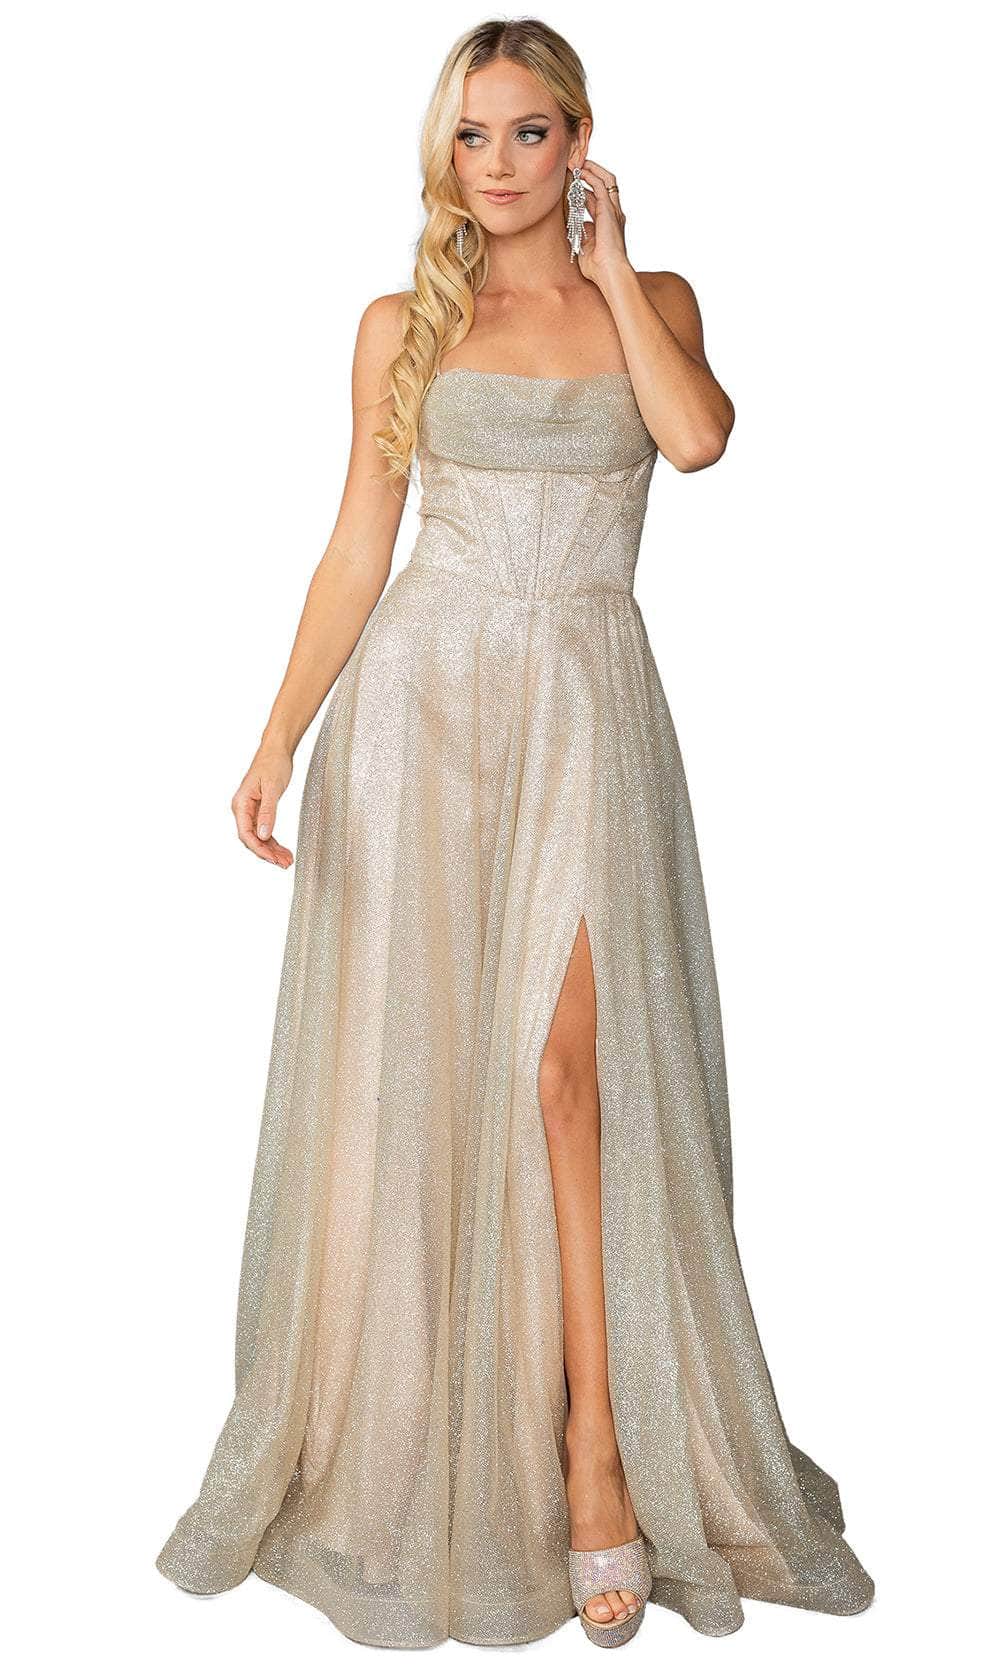 Dancing Queen 4428 - Glitter A-Line Prom Dress